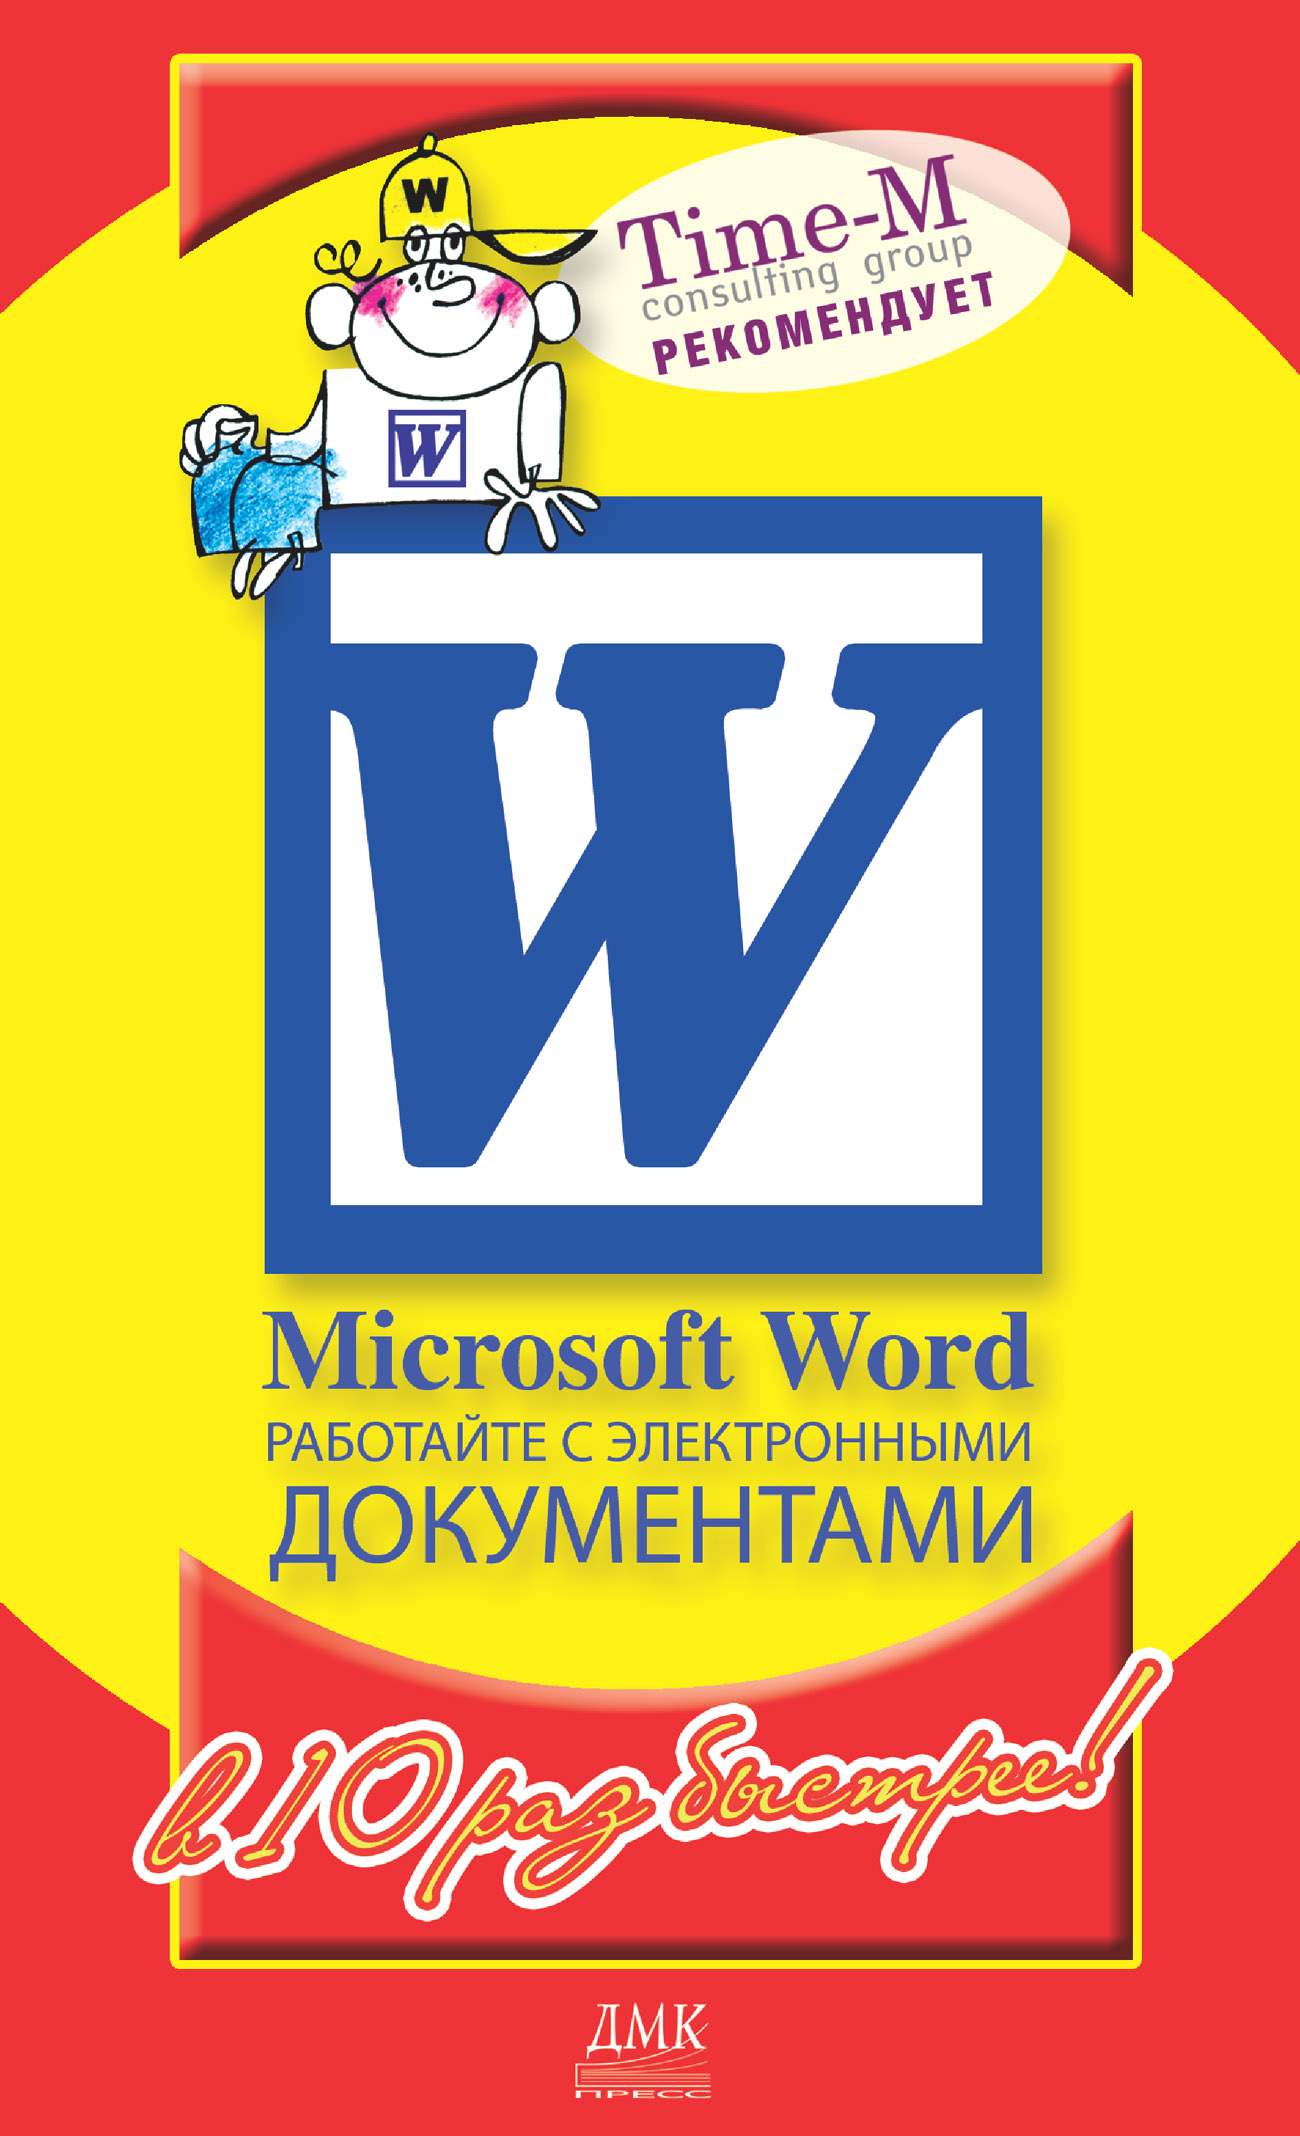 Книга  Microsoft Word. Работайте с электронными документами в 10 раз быстрее созданная Дмитрий Котлеев, Александр Горбачев может относится к жанру программы. Стоимость электронной книги Microsoft Word. Работайте с электронными документами в 10 раз быстрее с идентификатором 436105 составляет 119.00 руб.